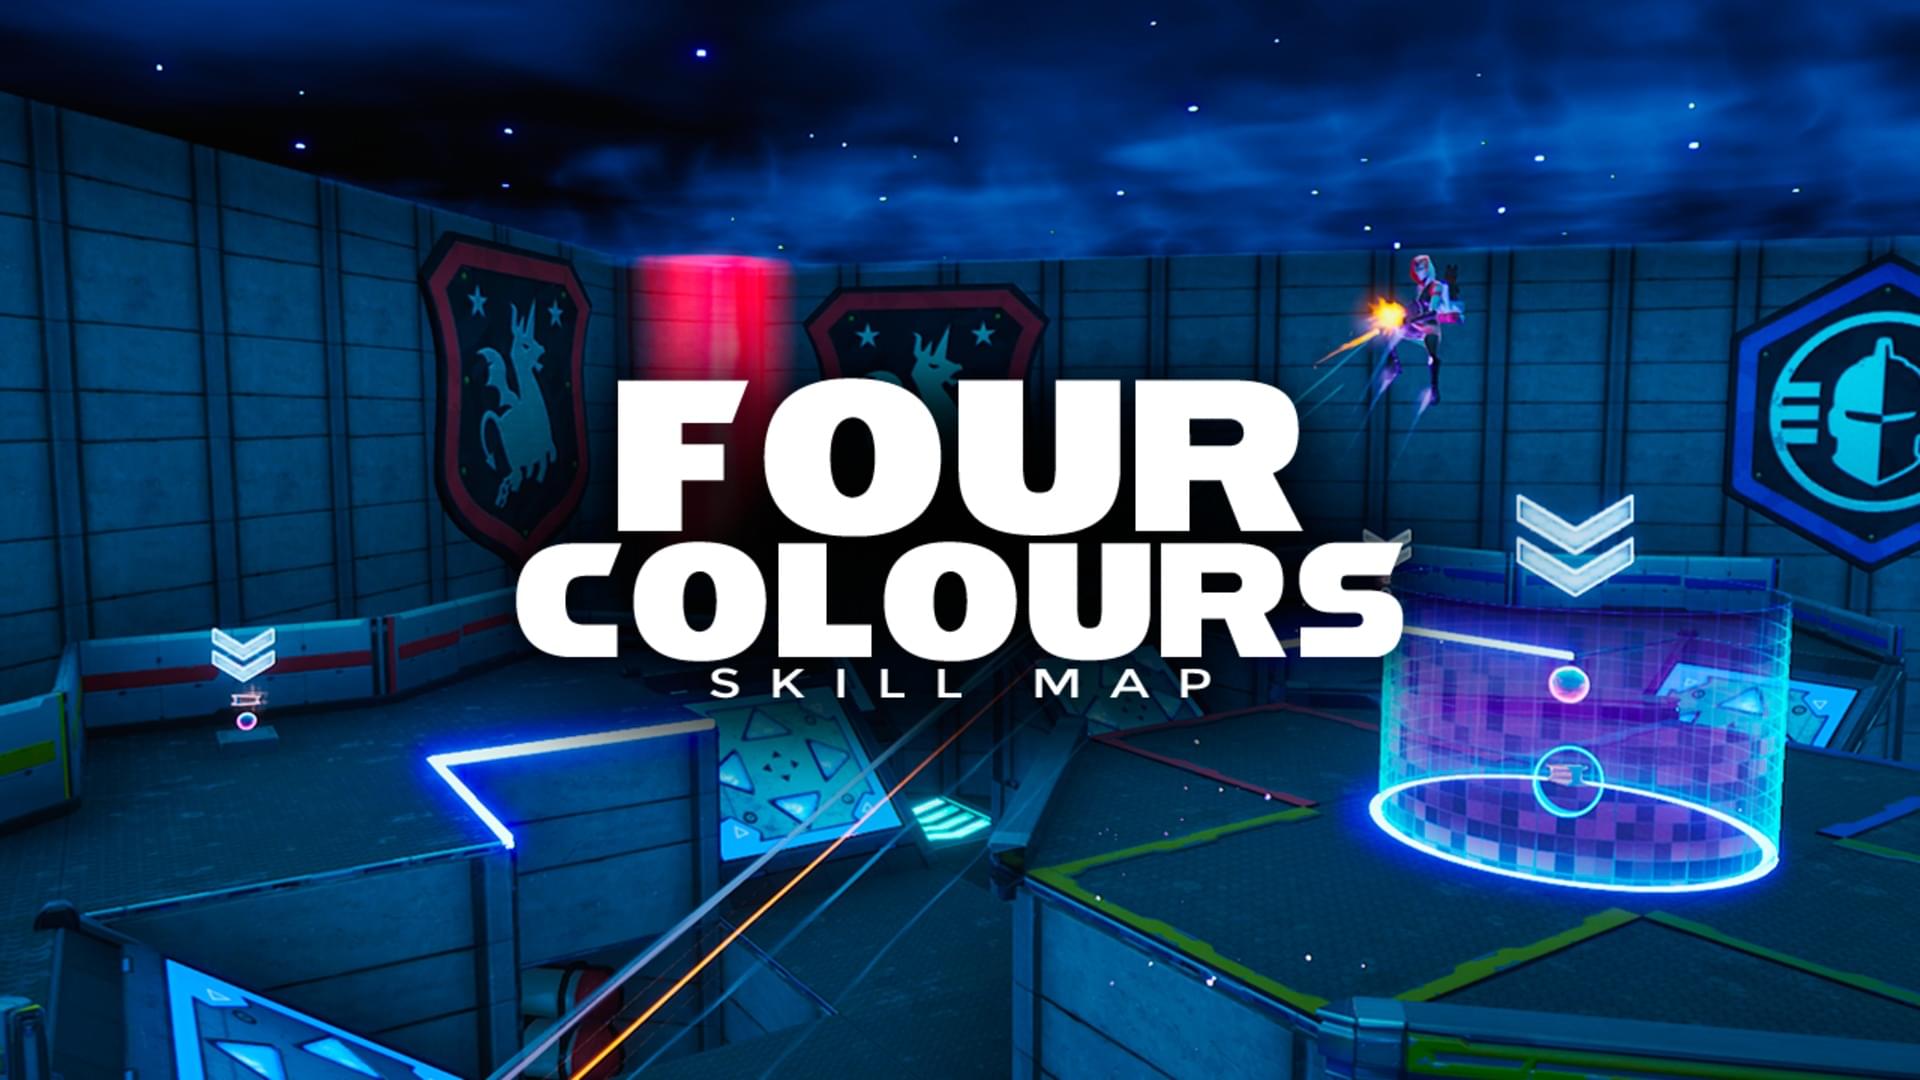 Fortnite Island Codes All Fortnite Creative Maps And Gamemodes - fortnite creative island four colours by frya6242 4565 4437